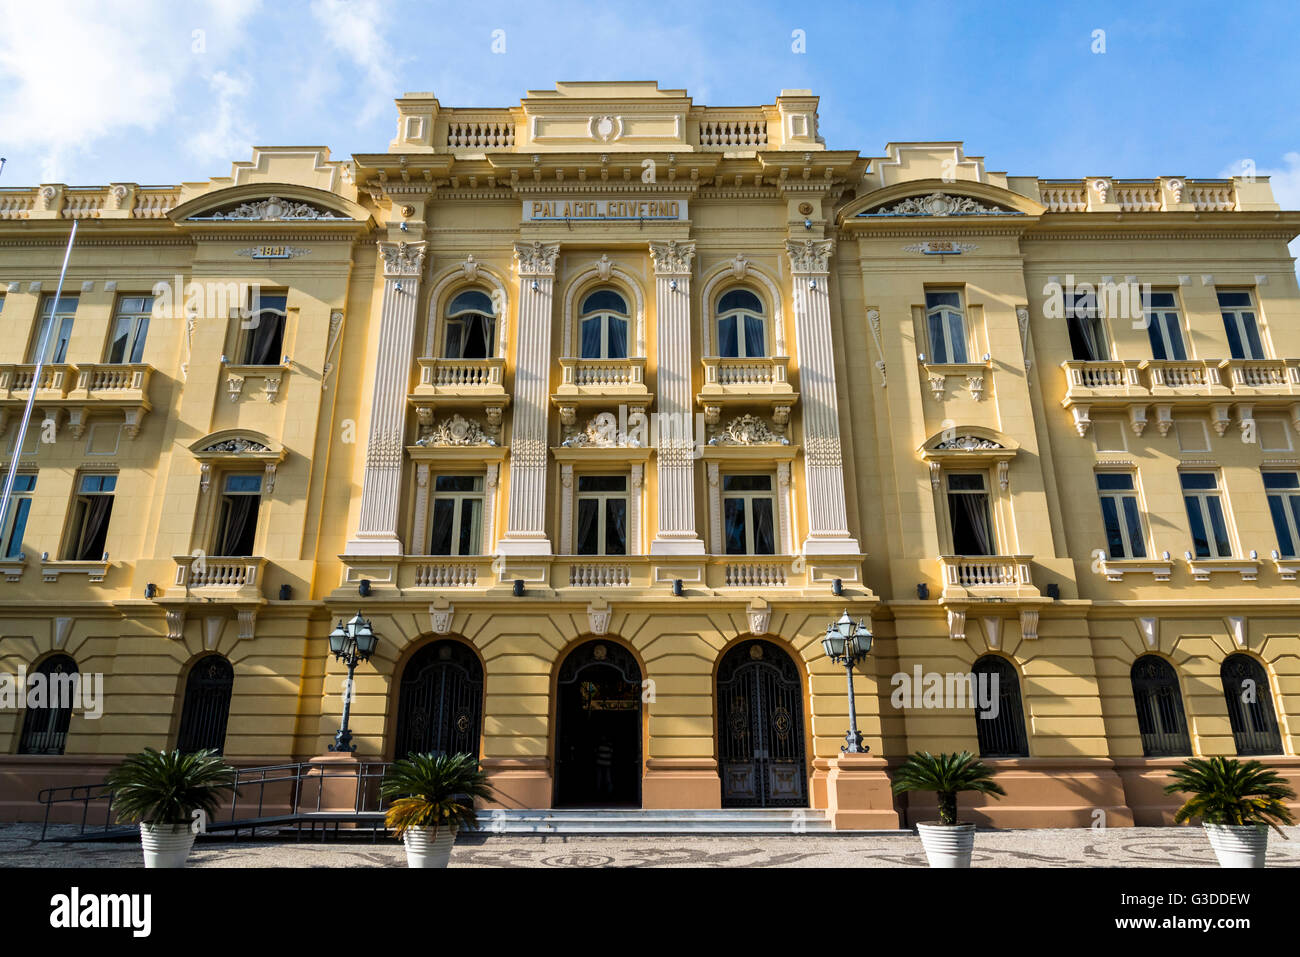 Palácio do Campo das Princesas, State Government Palace, Recife, Pernambuco, Brazil Stock Photo